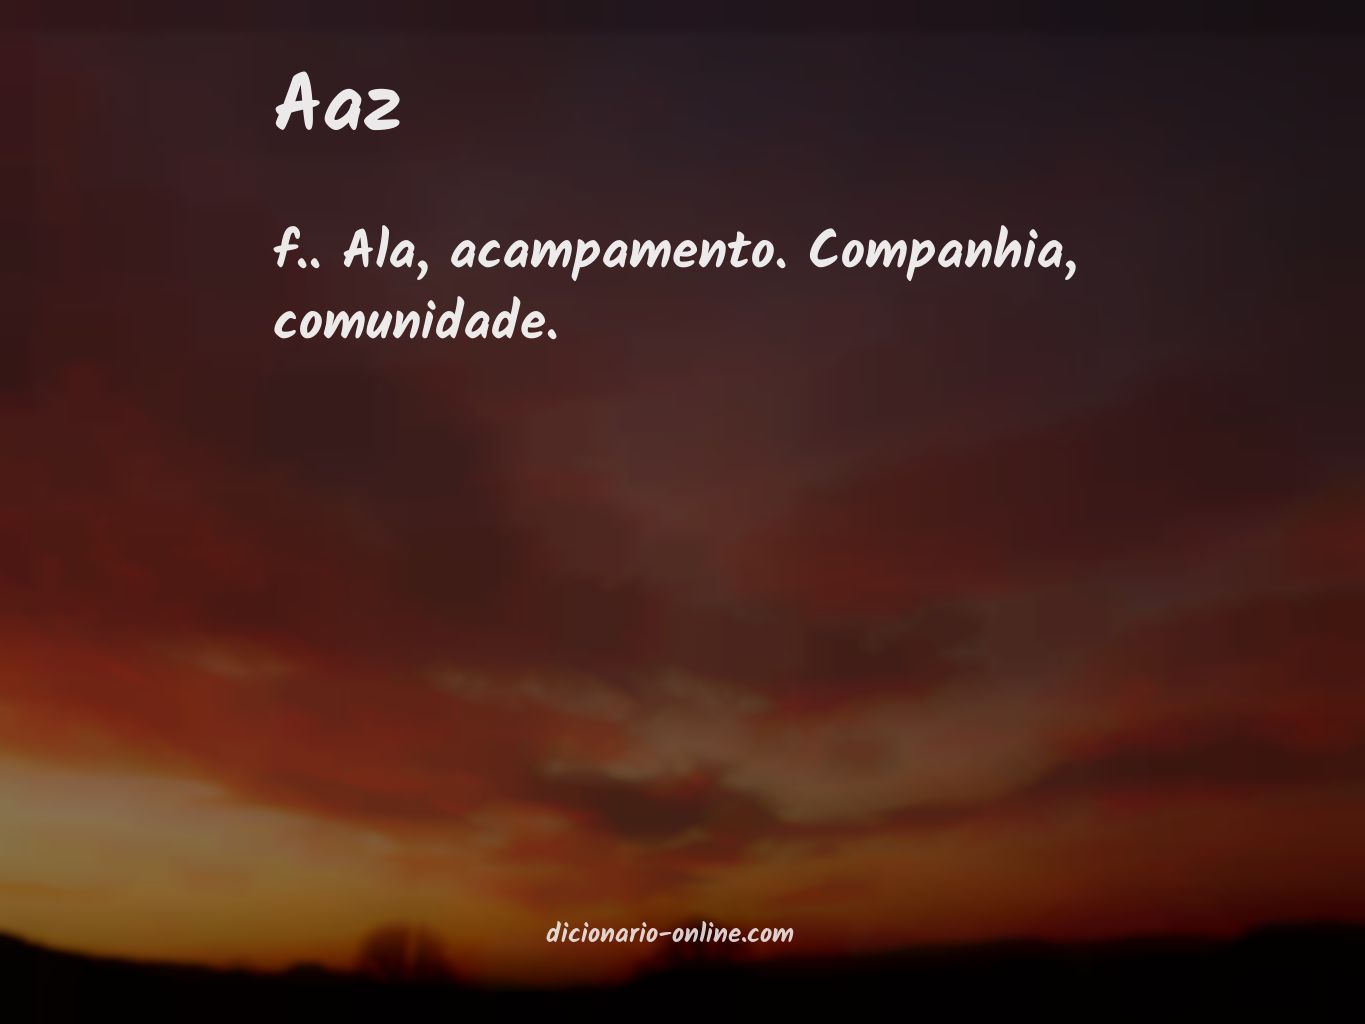 Significado de aaz